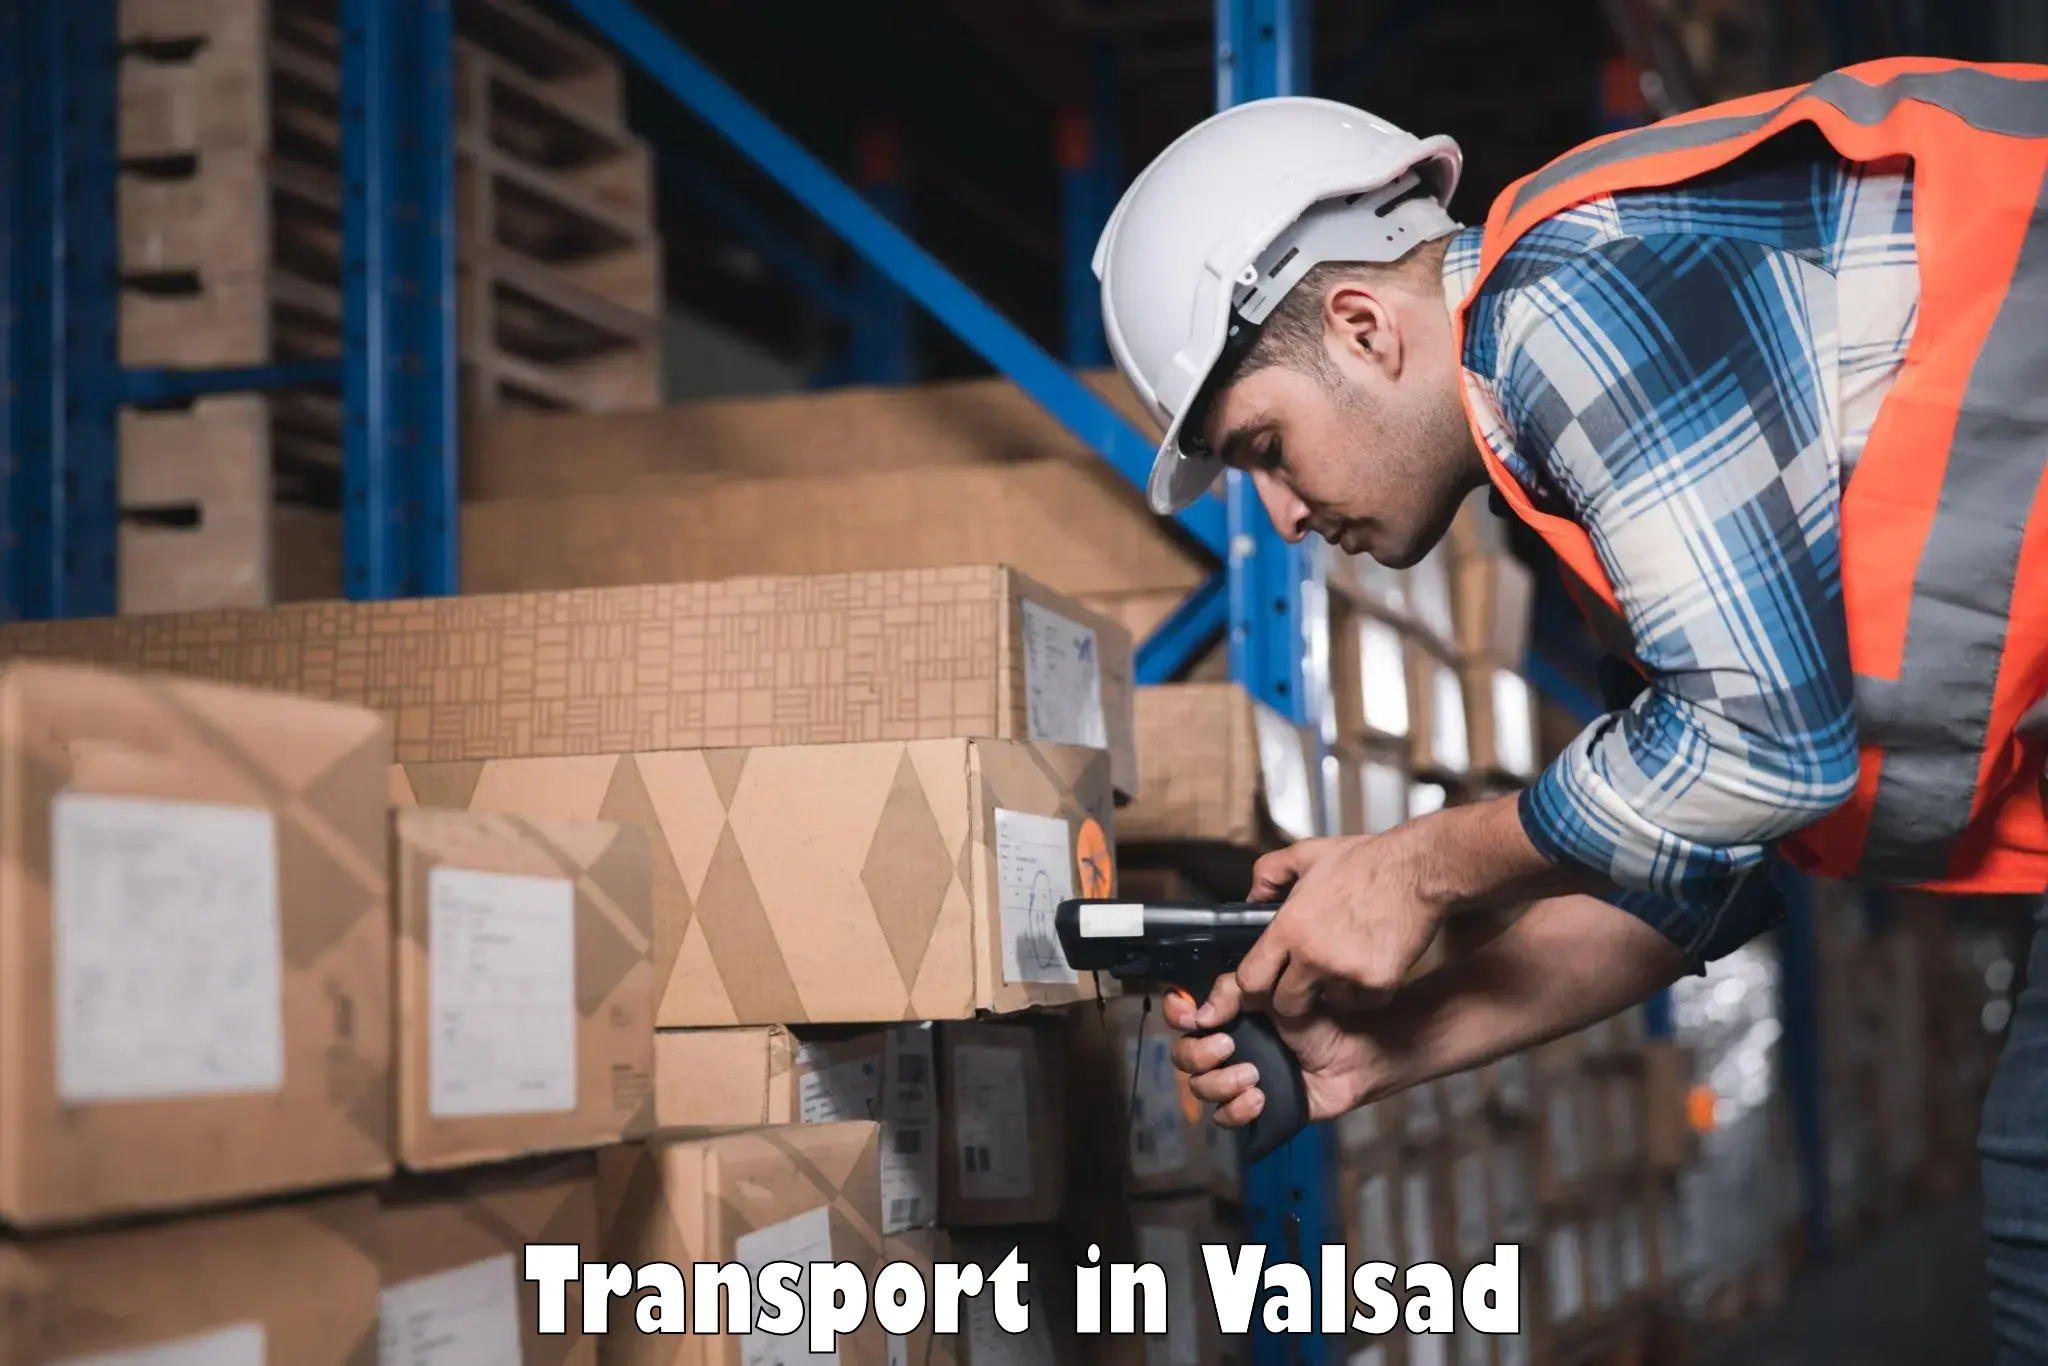 Transportation solution services in Valsad